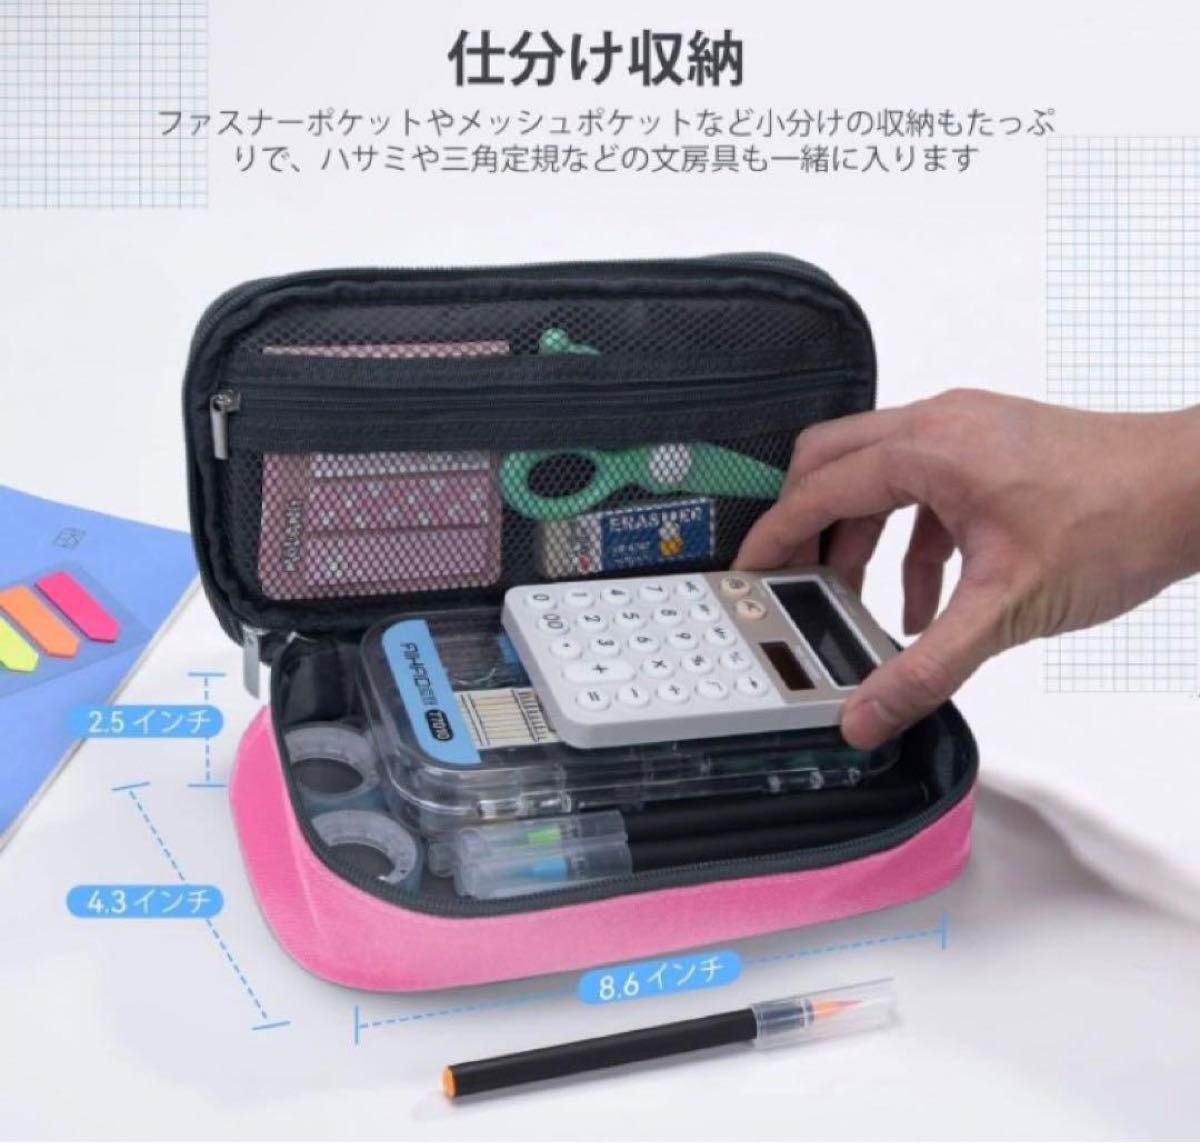 【早いもの勝ち】多機能ペンケース 大容量 シンプル 筆箱 ピンク 入学祝い